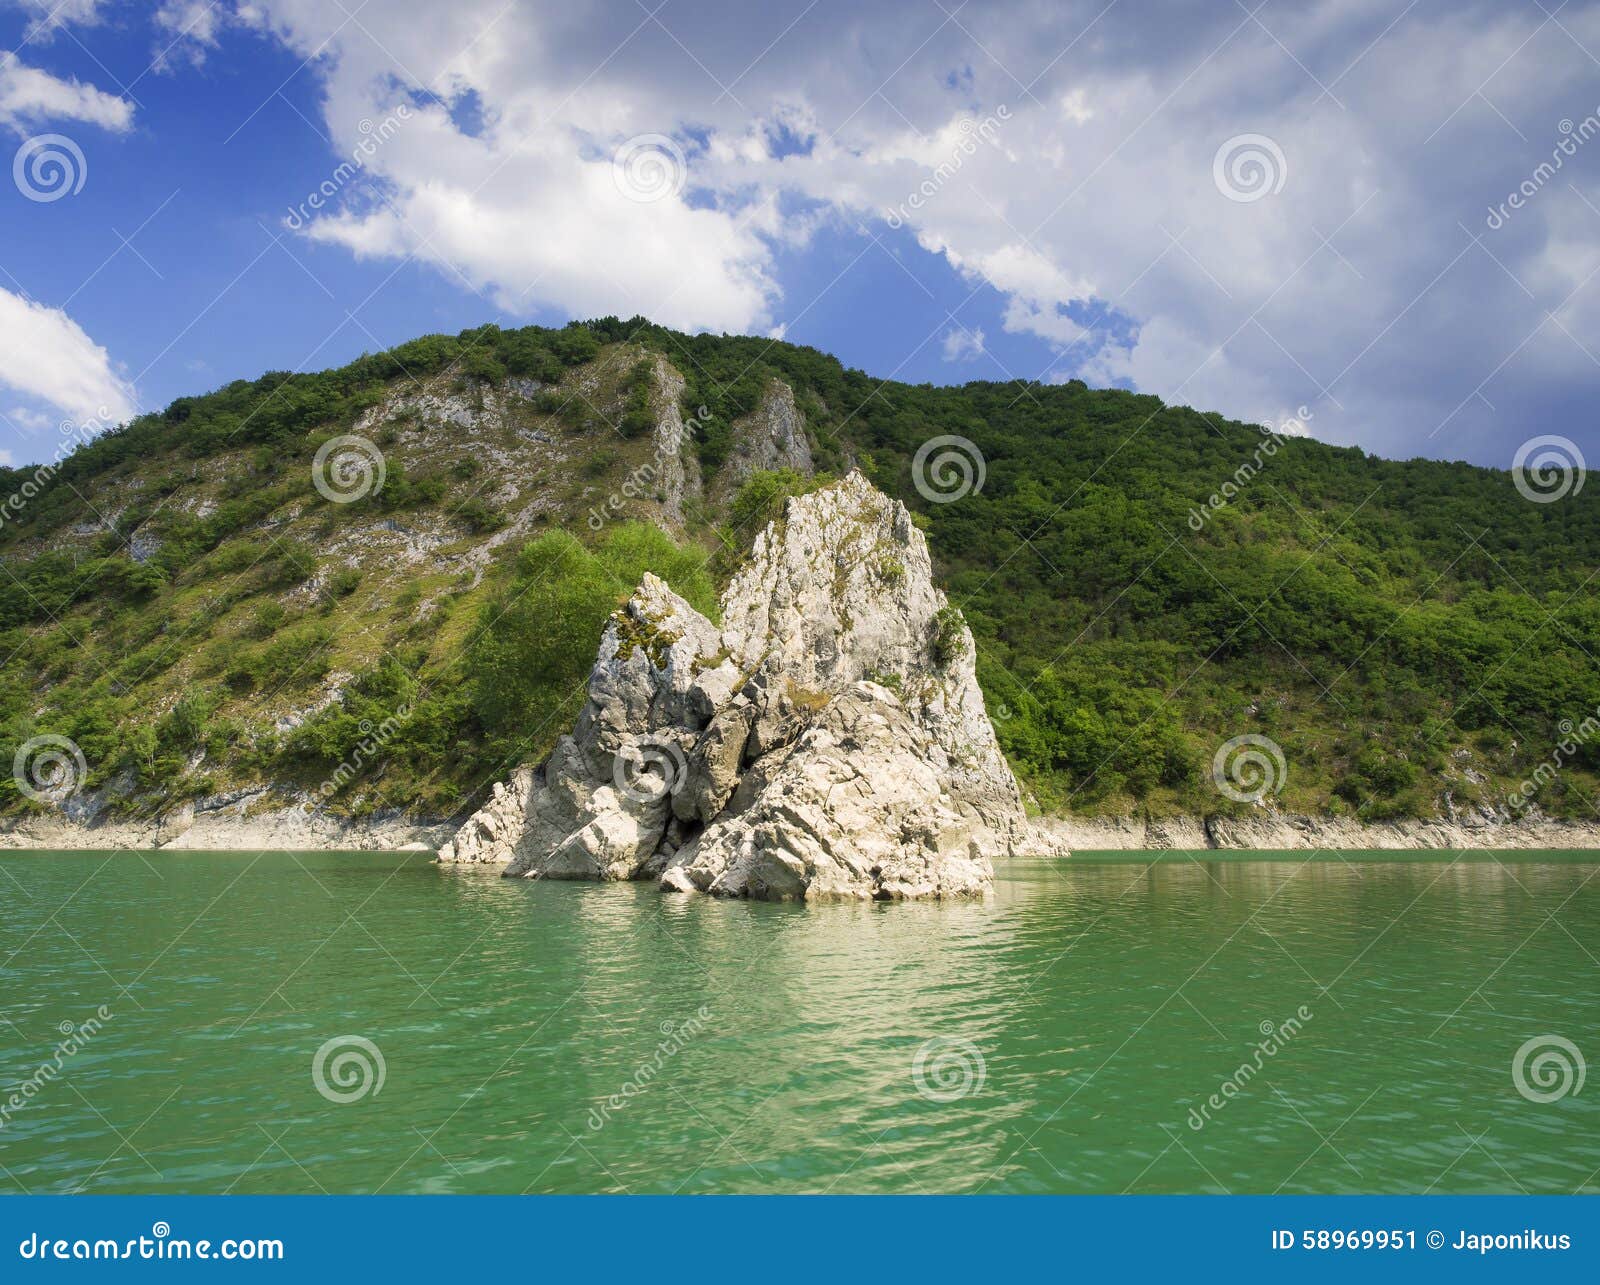 lake uvac, serbia